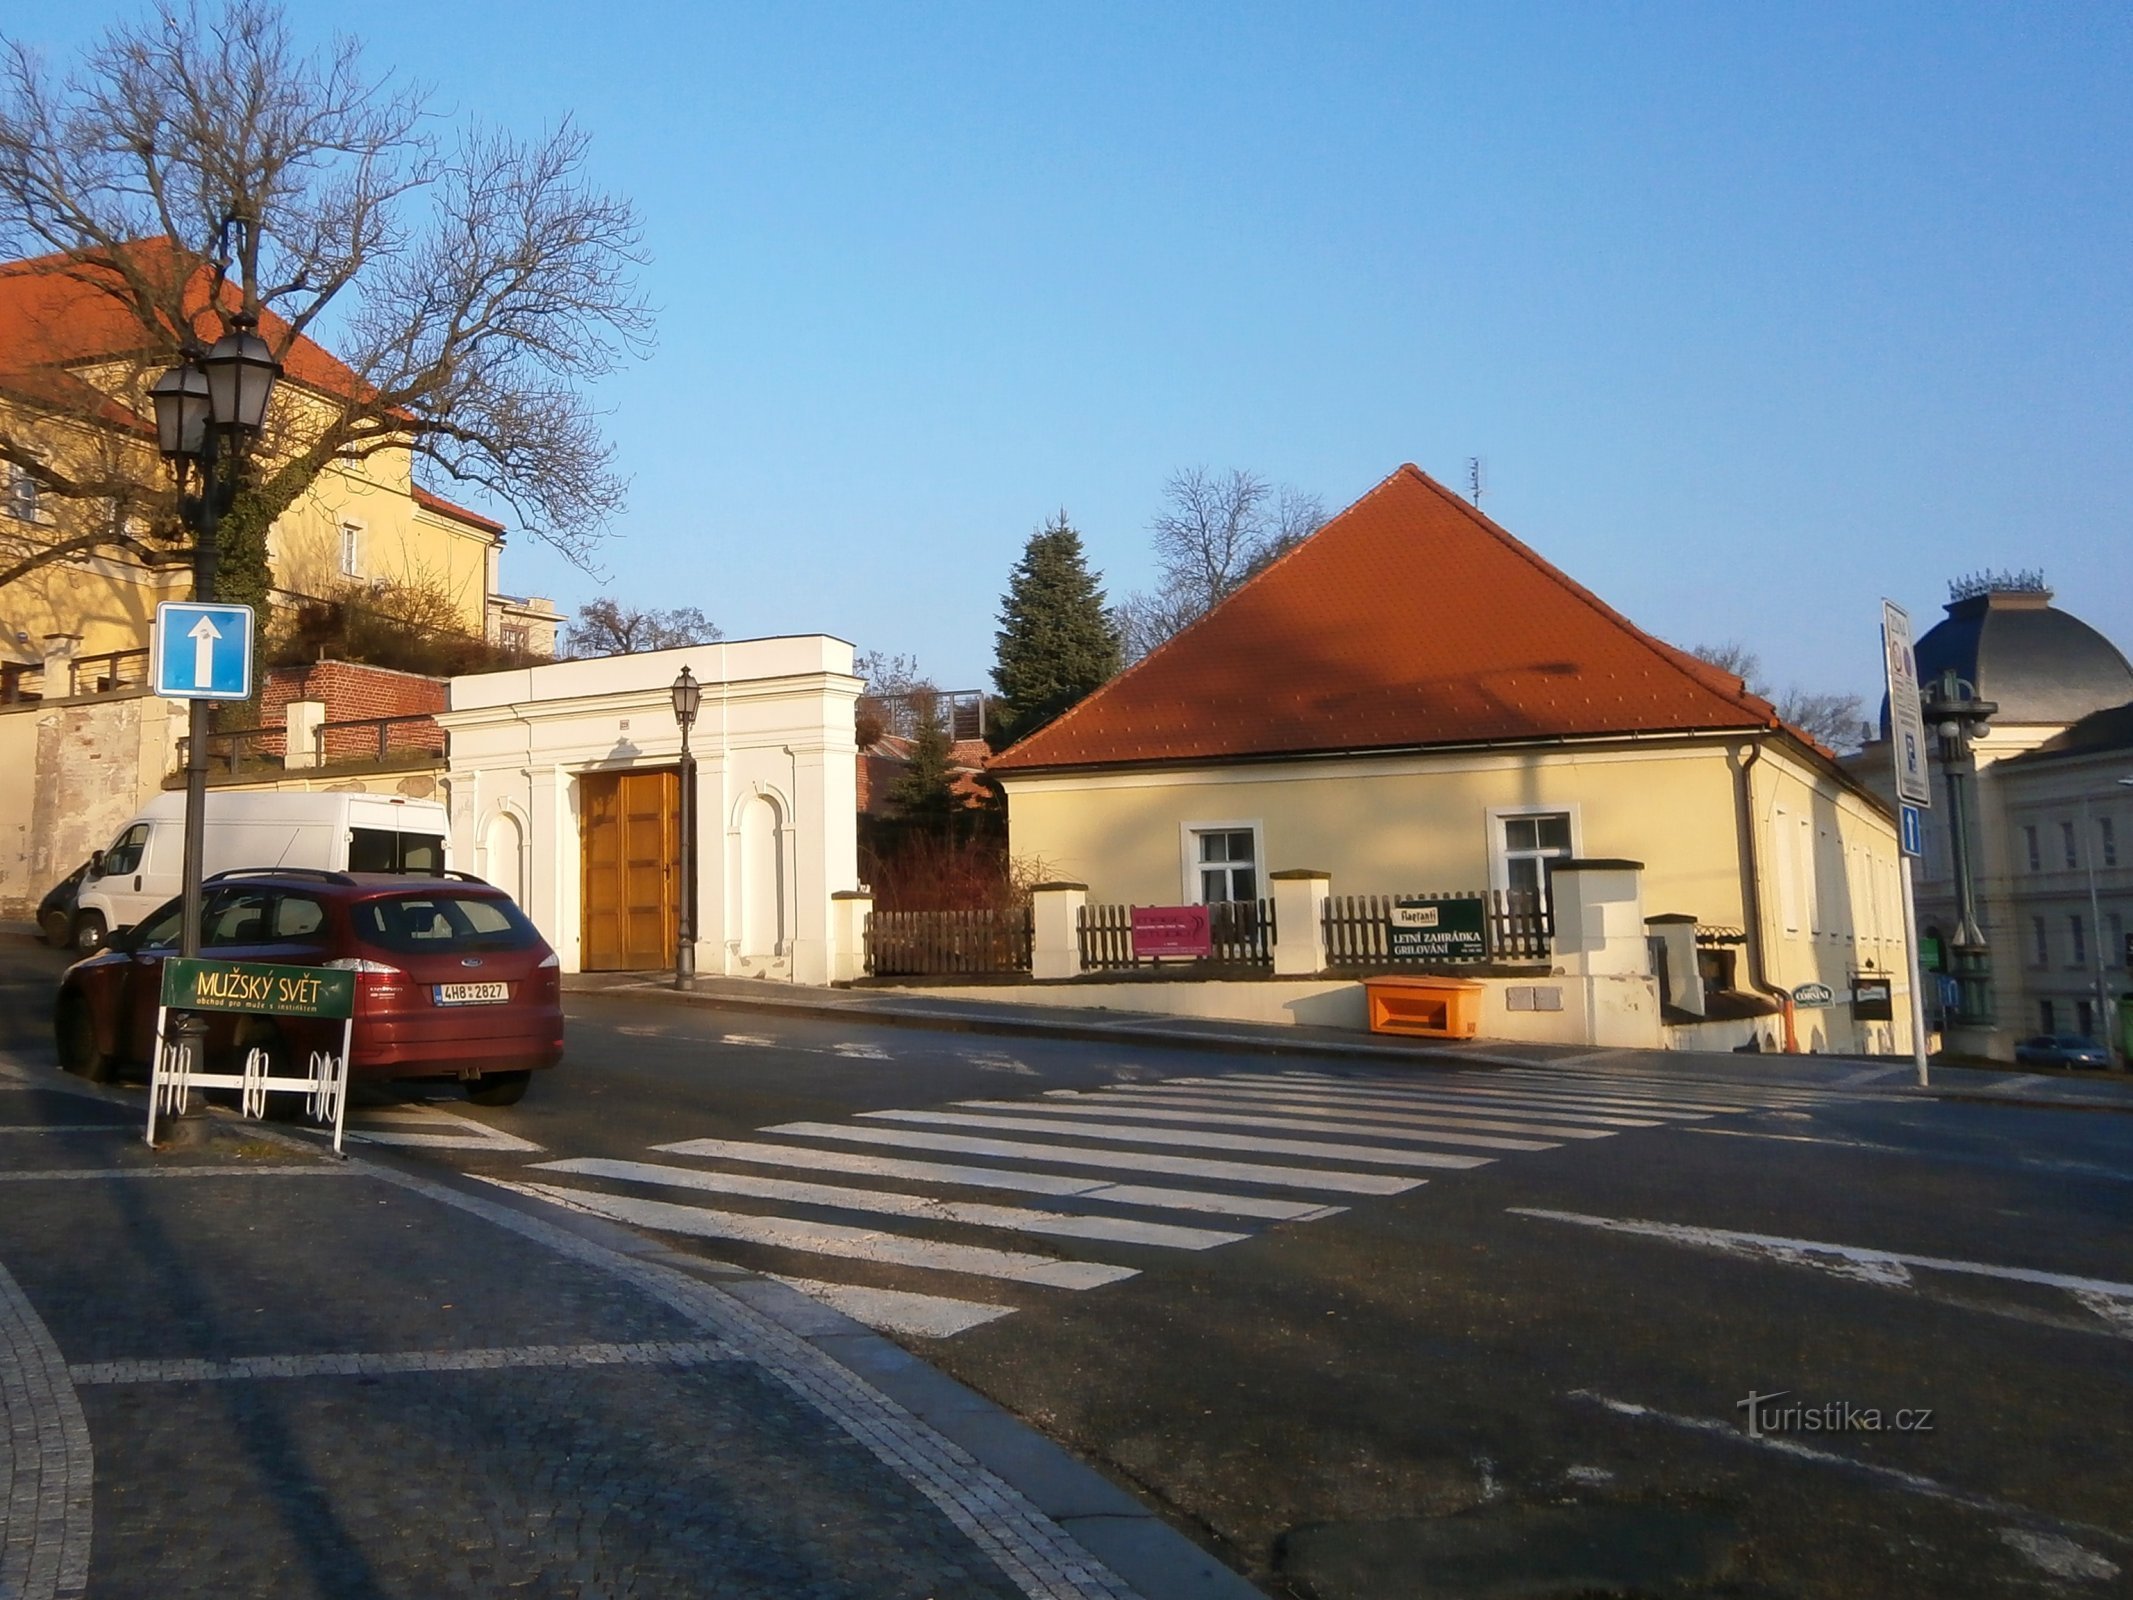 Διεύθυνση Μηχανικών (Hradec Králové, 16.1.2015 Ιουλίου XNUMX)